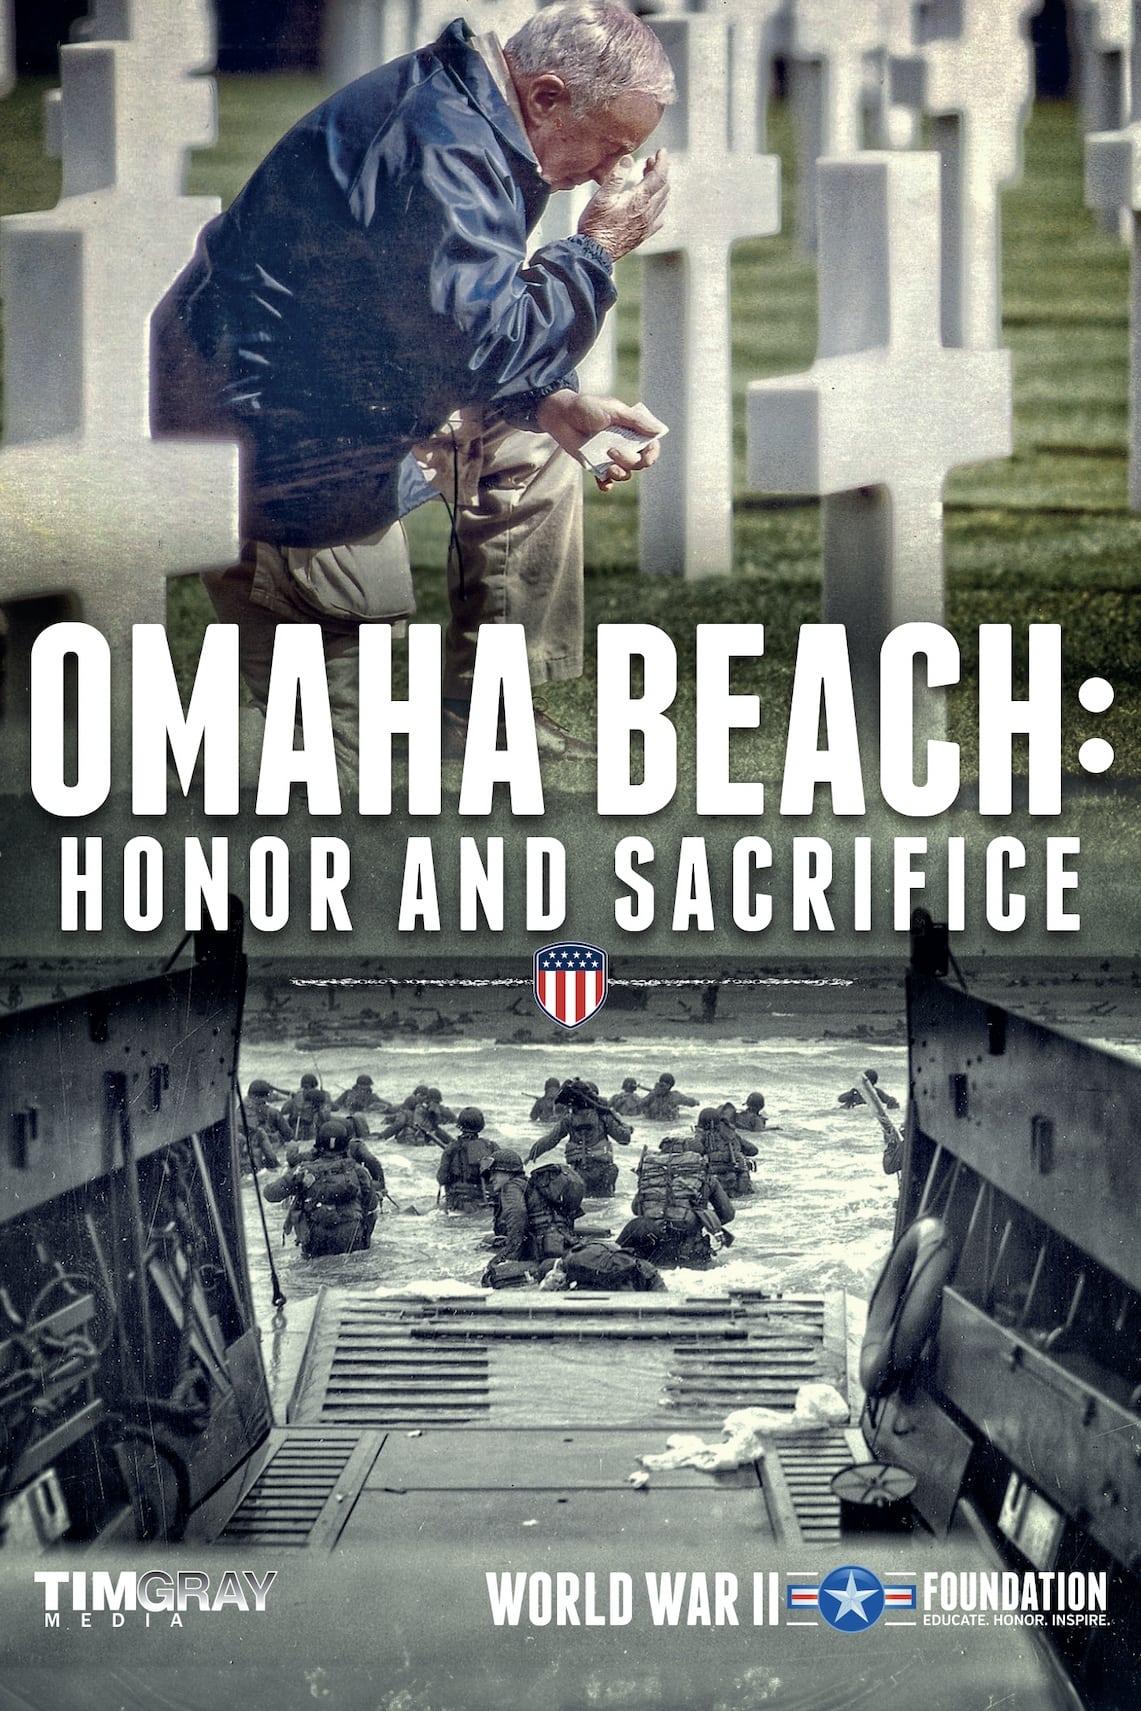 Omaha Beach: Honor and Sacrifice poster